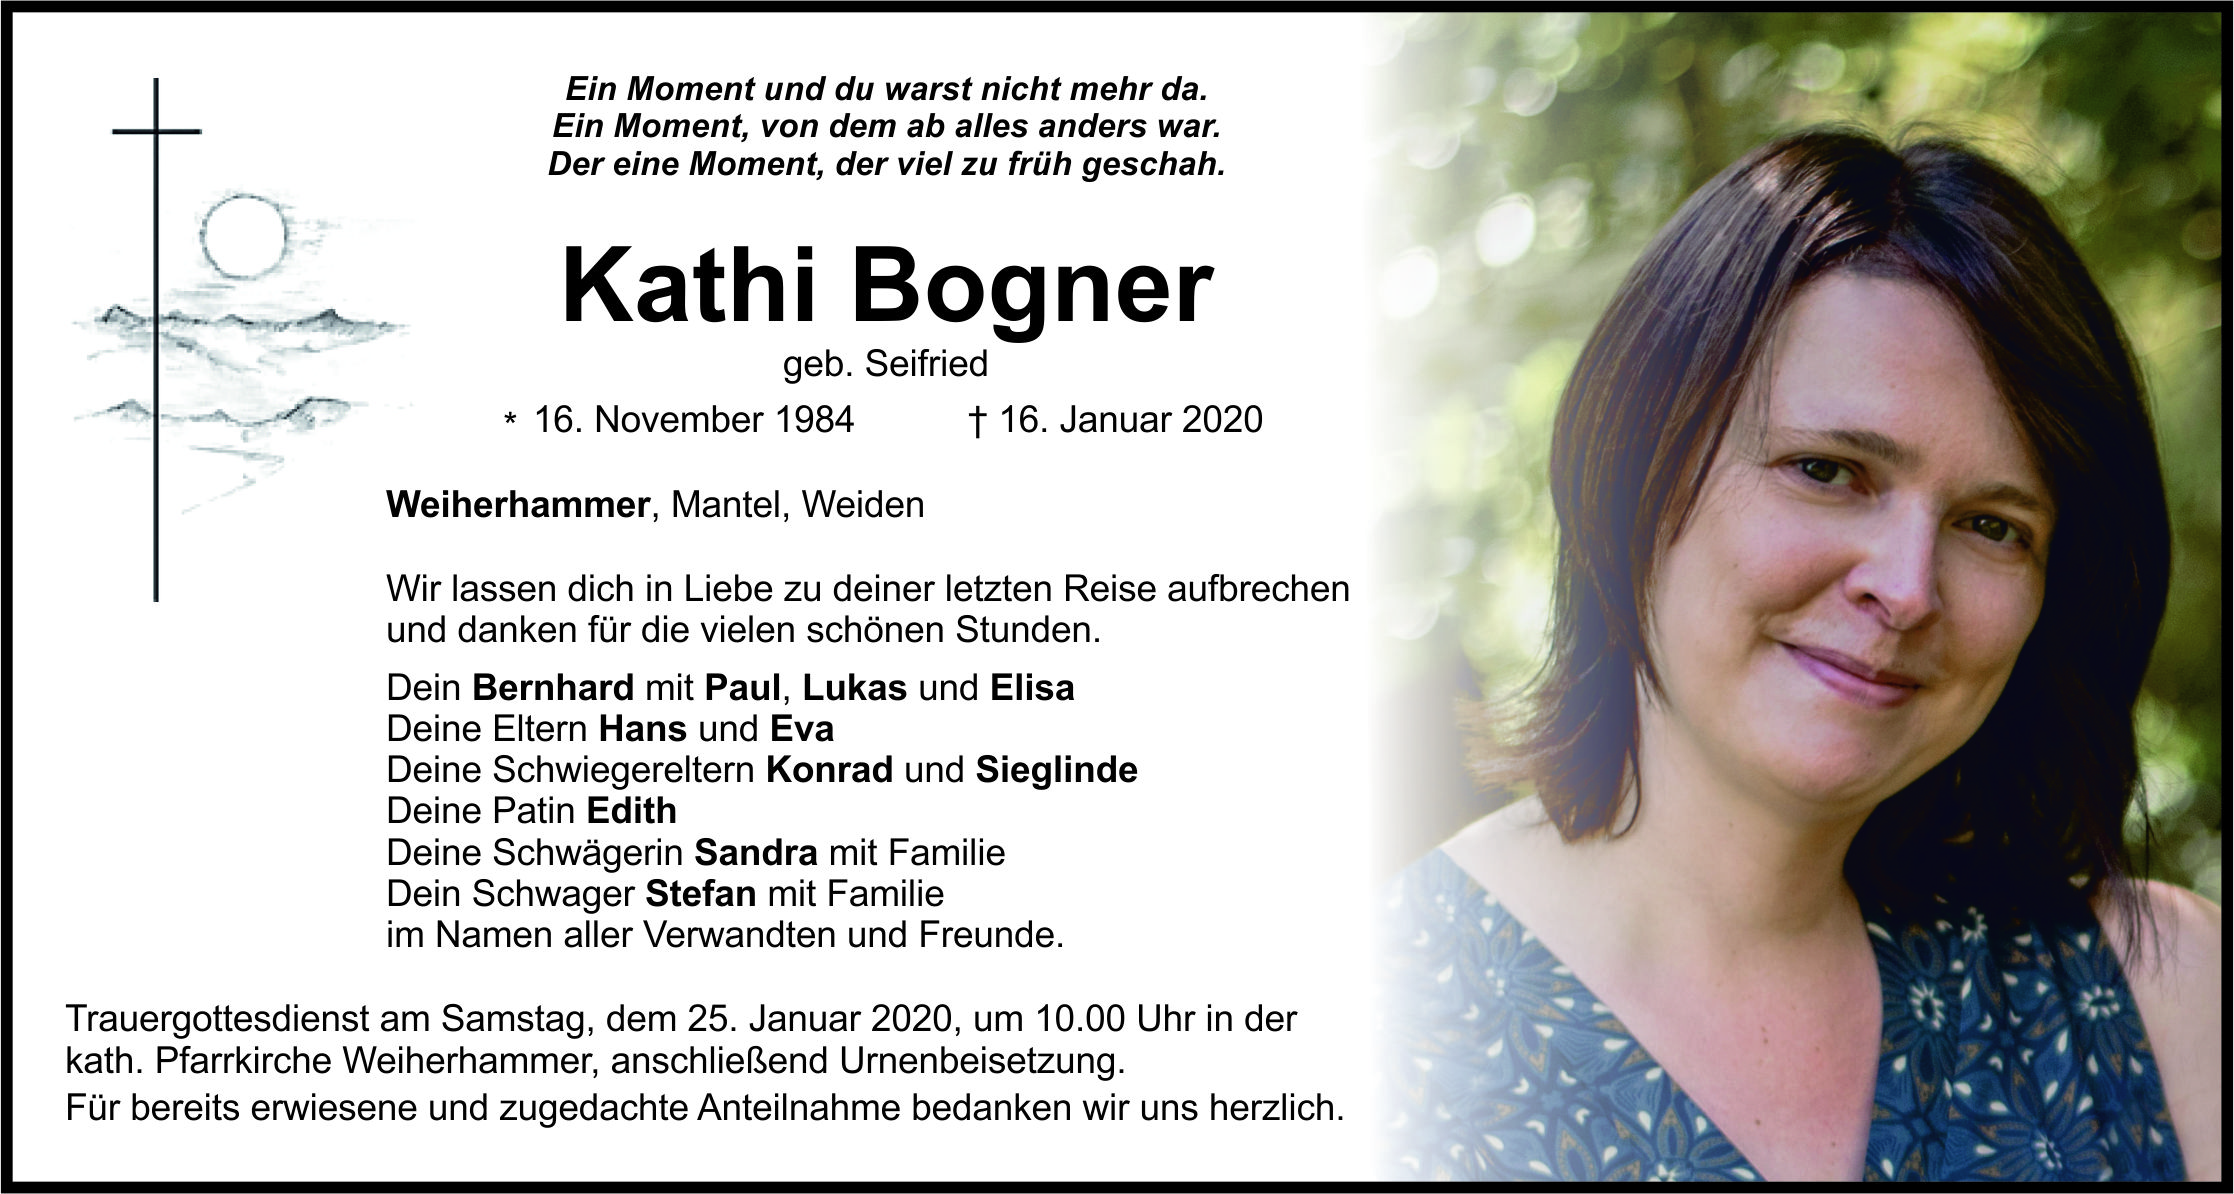 Traueranzeige Kathi Bogner, Weiherhammer